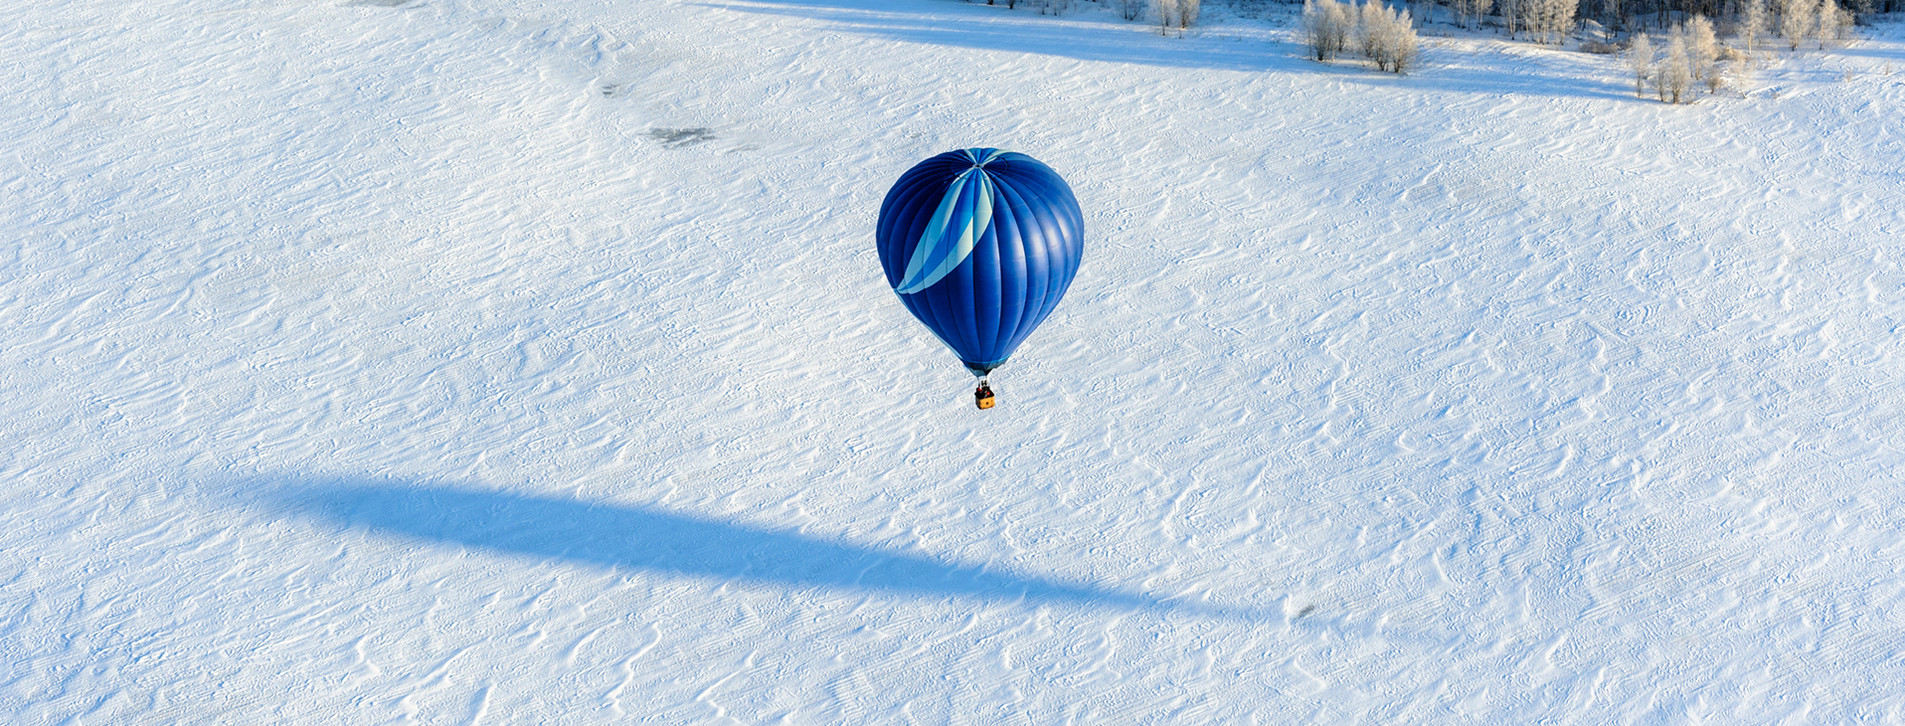 Фото 1 - Воздушный шар в группе